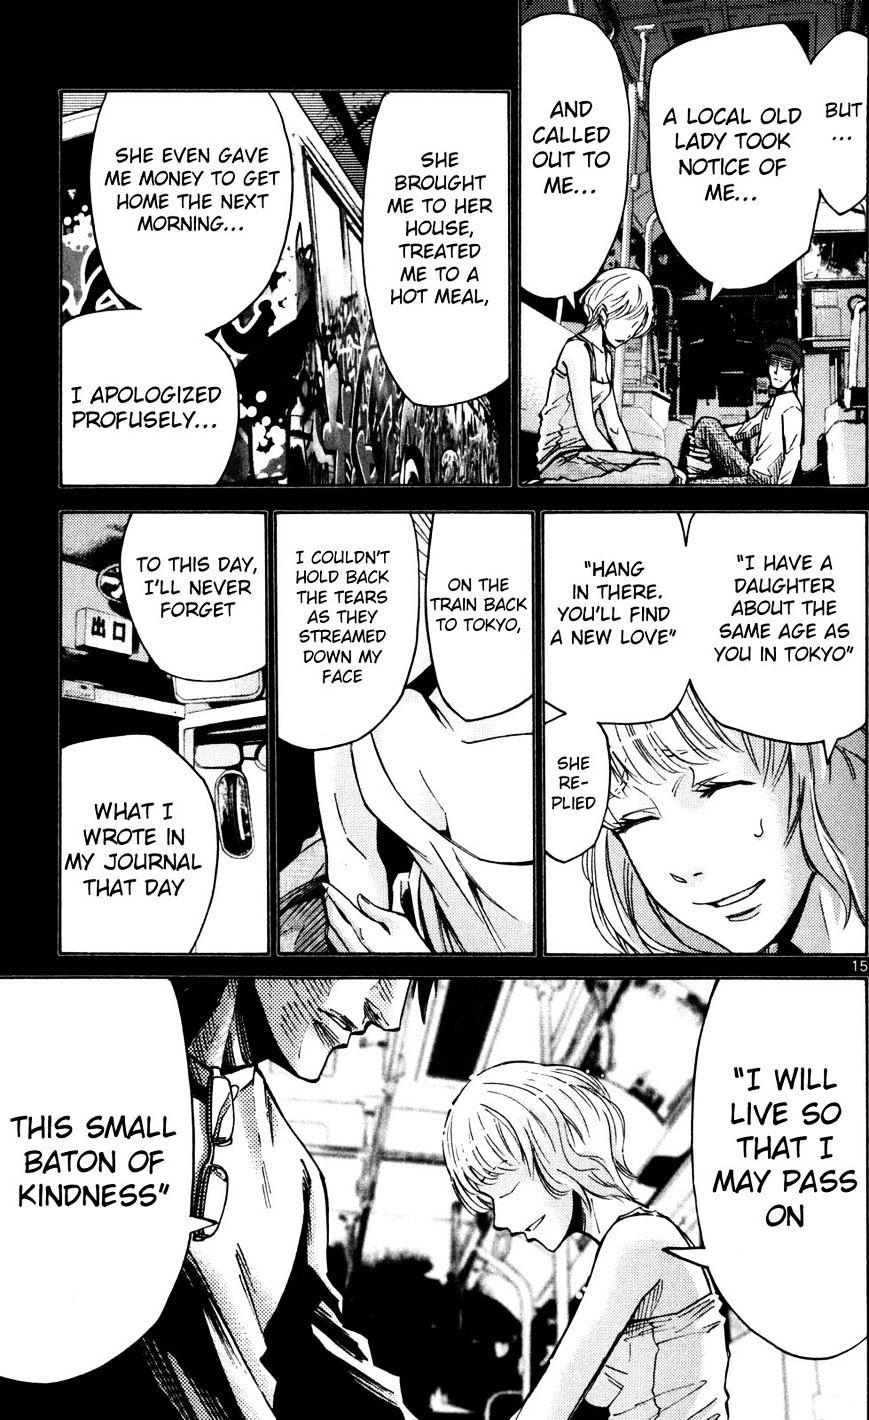 Imawa No Kuni No Alice Chapter 51.5 : Side Story 6 - King Of Diamonds (5) page 15 - Mangakakalot